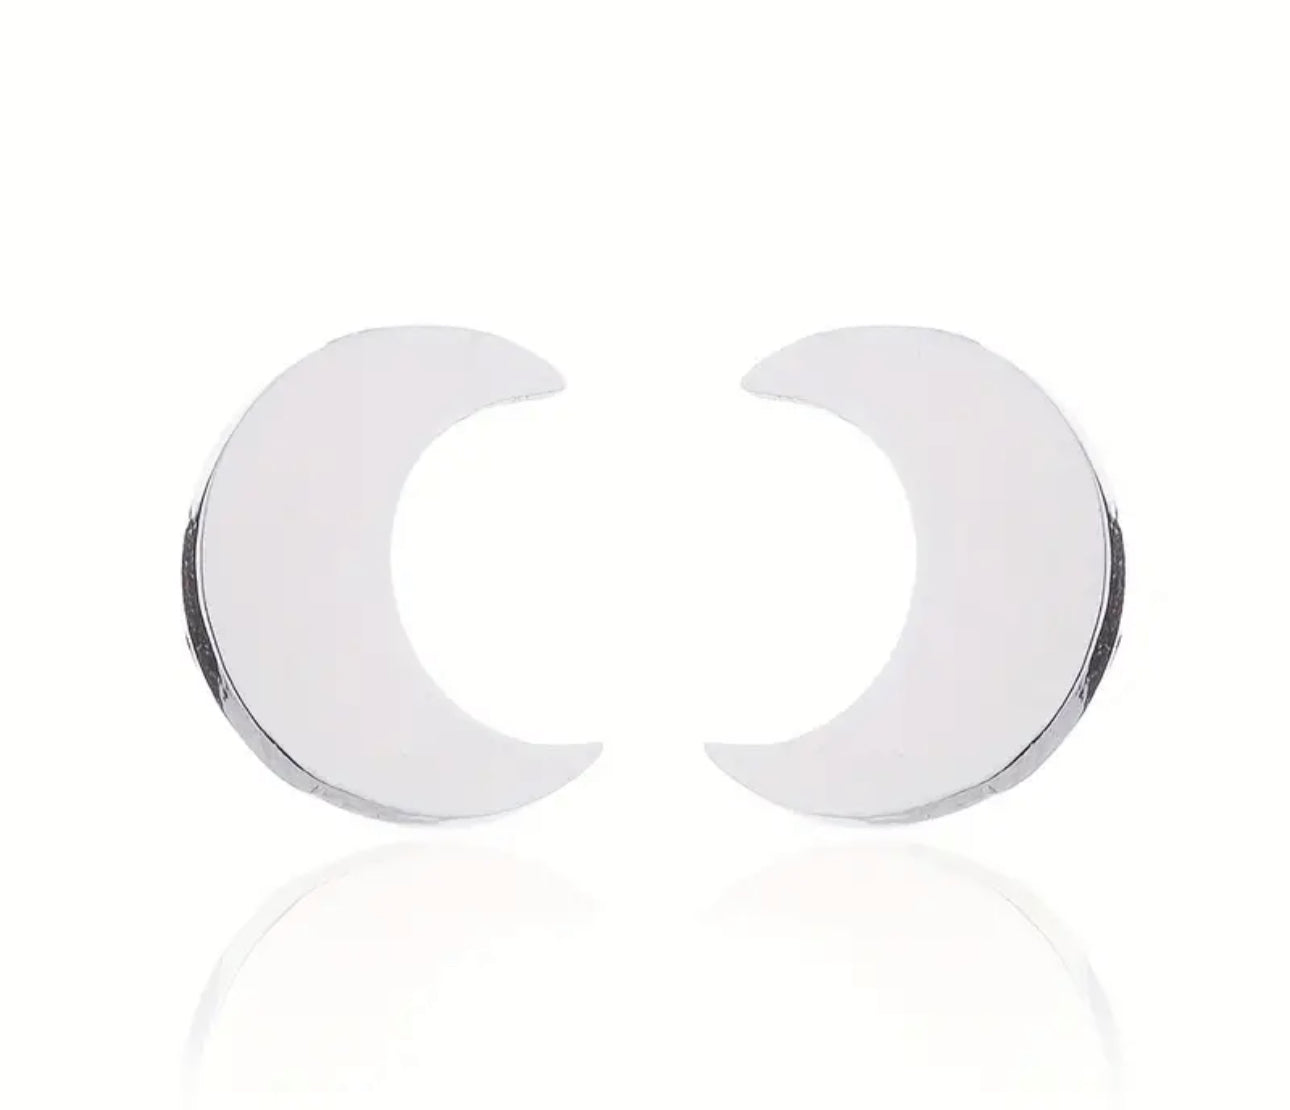 Stainless Steel Moon Stud Earrings